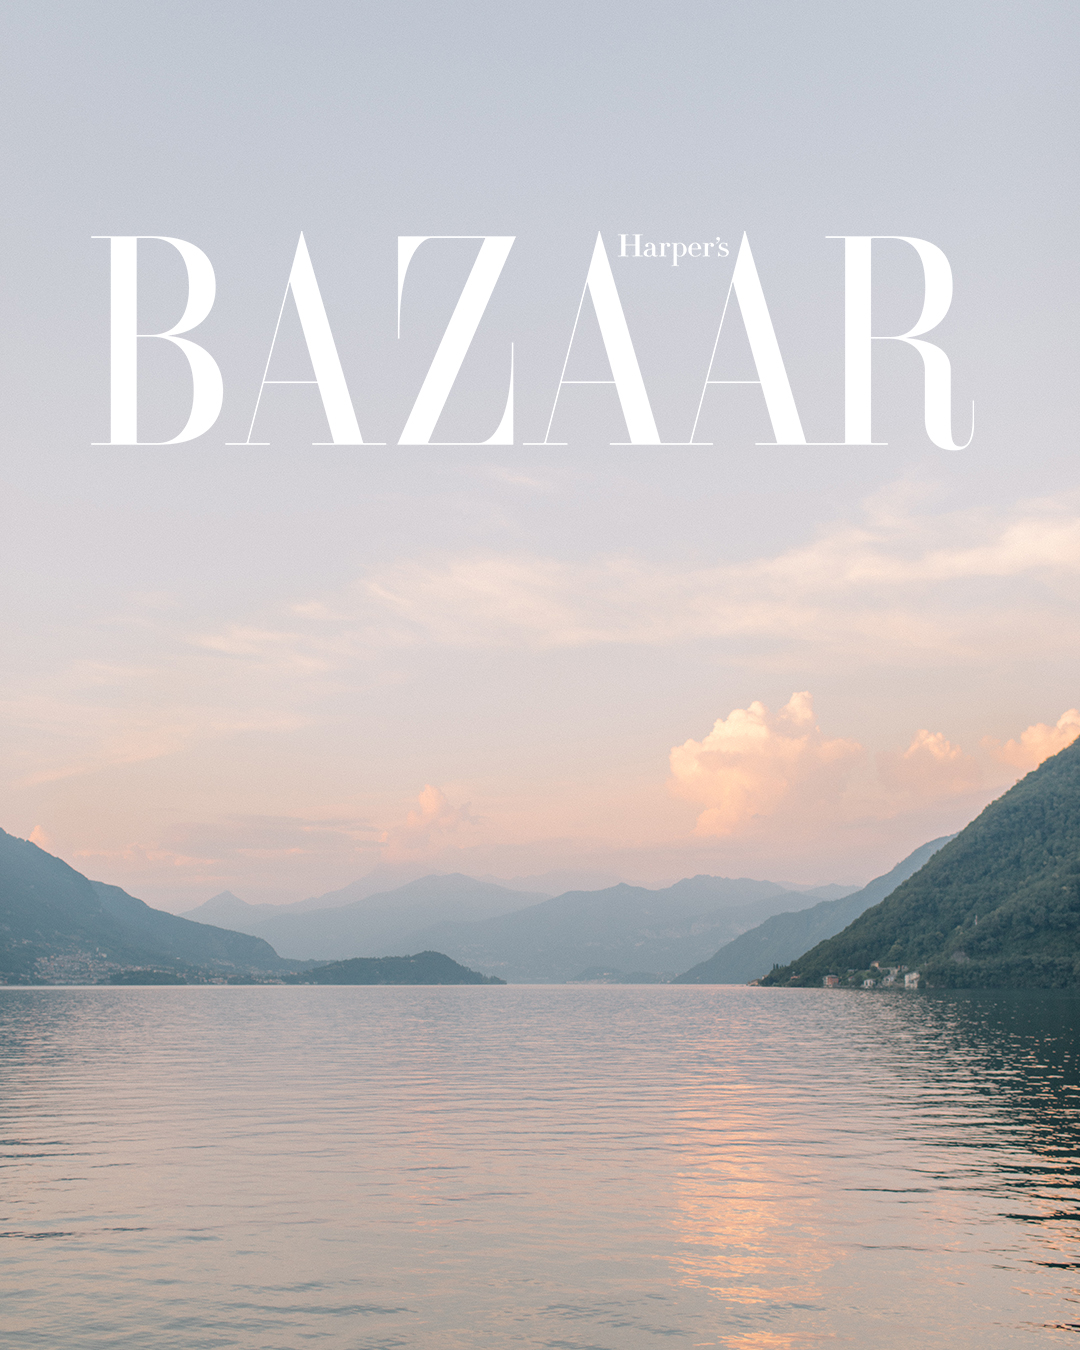 Harpers Bazaar 2020 Travel Guide